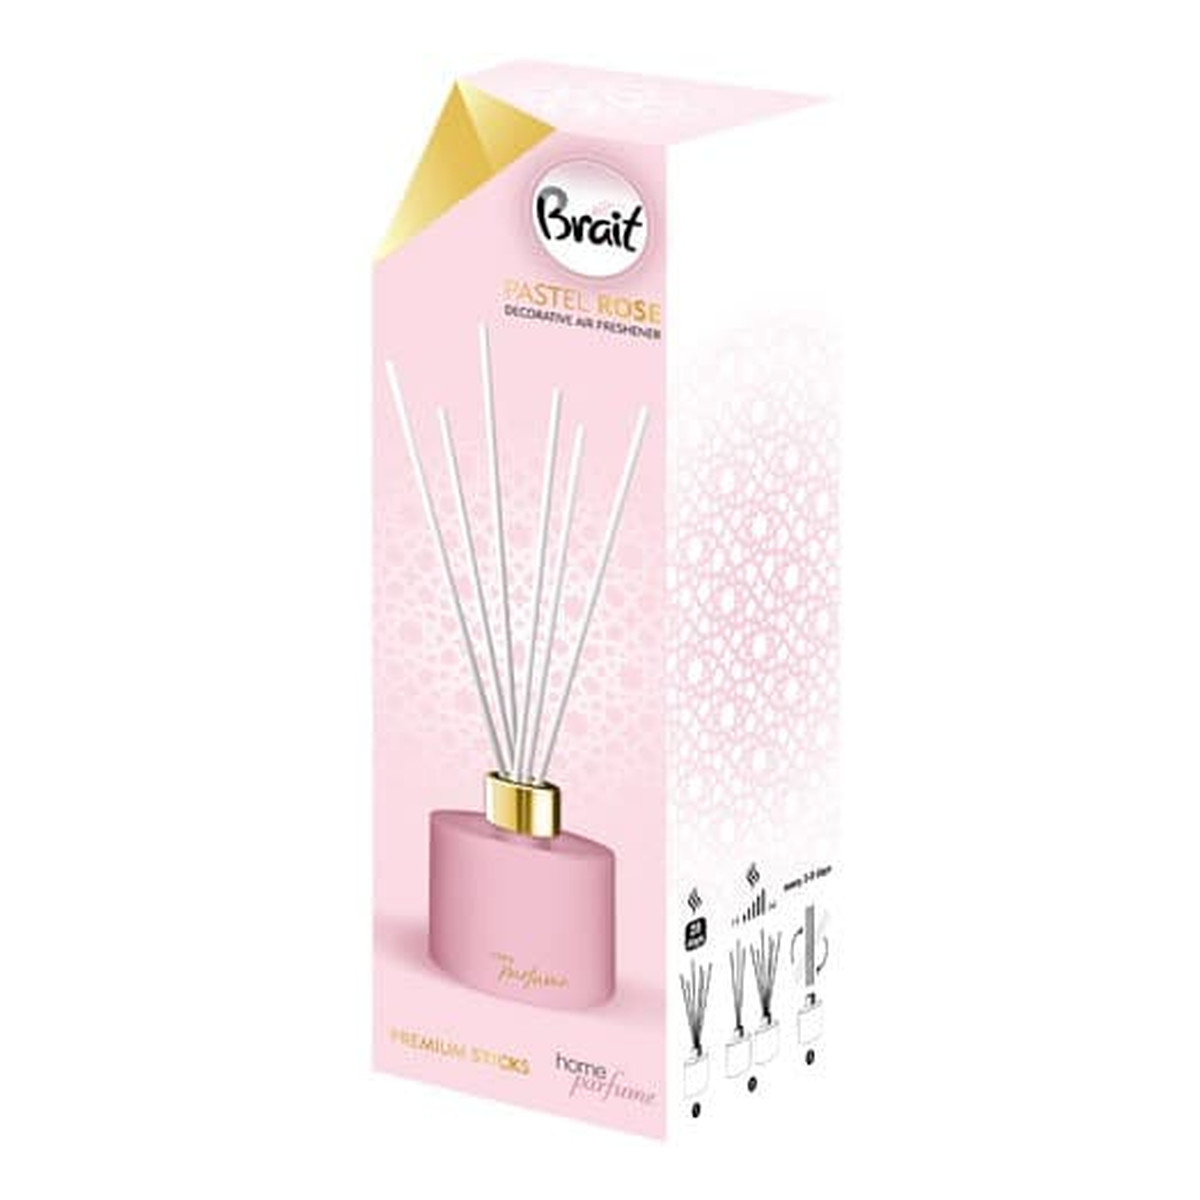 Brait Home Parfume Decorative Olejek zapachowy + patyczki Pastel Rose 100ml